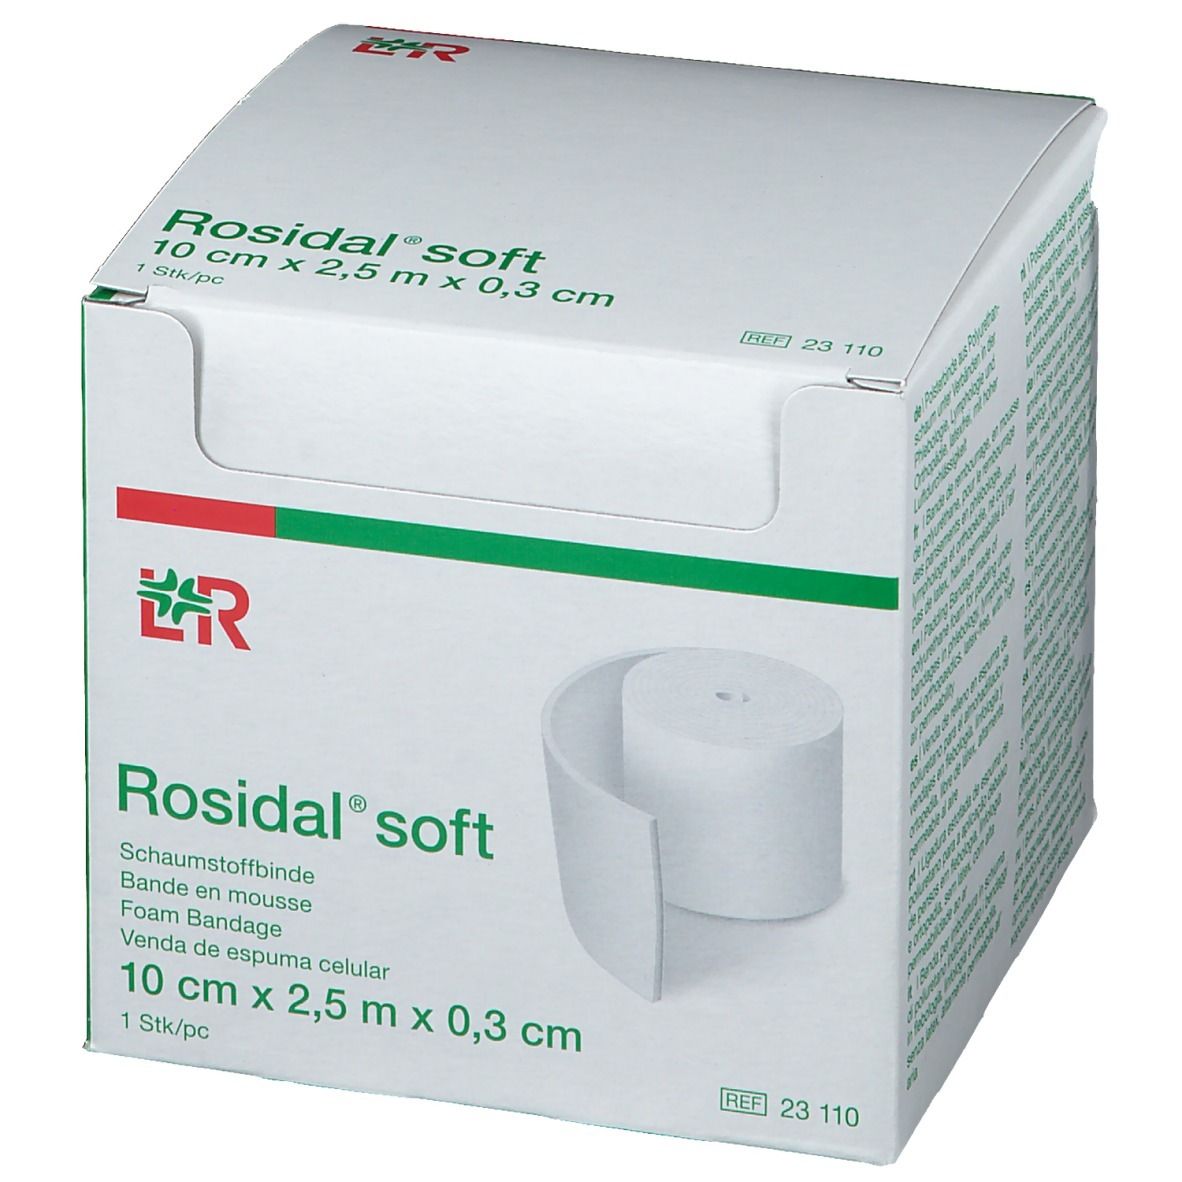 Rosidal® Soft 0,3 cm Stärke 10 cm x 2,5 m